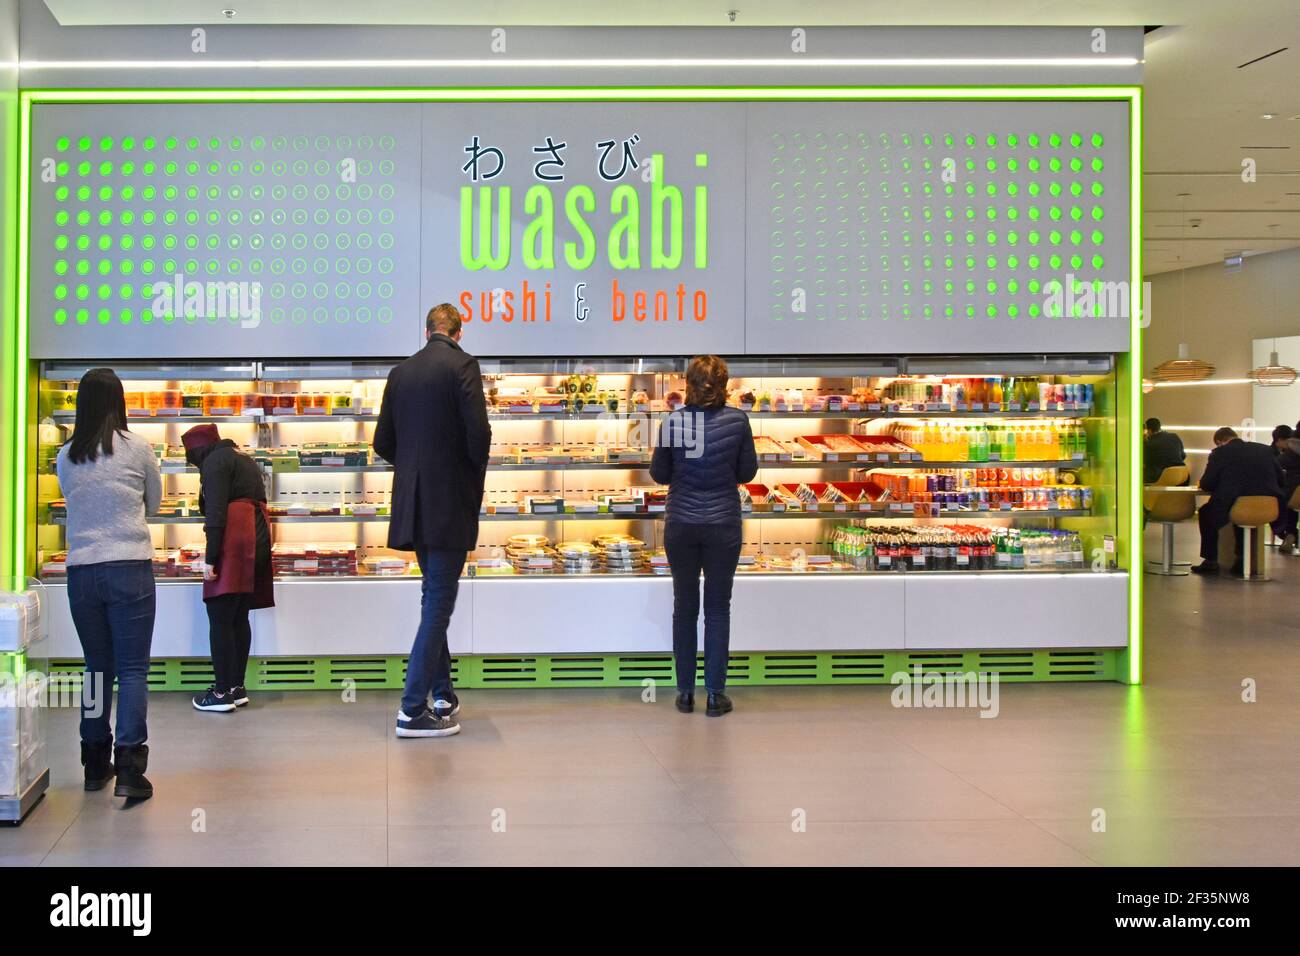 Menschen & Inneneinrichtung Wasabi Sushi Bento Fast Food Restaurant Und Selbstbedienungs-Snackbar Japanisches Essen zum Mitnehmen gekühlt Schalter London UK anzeigen Stockfoto